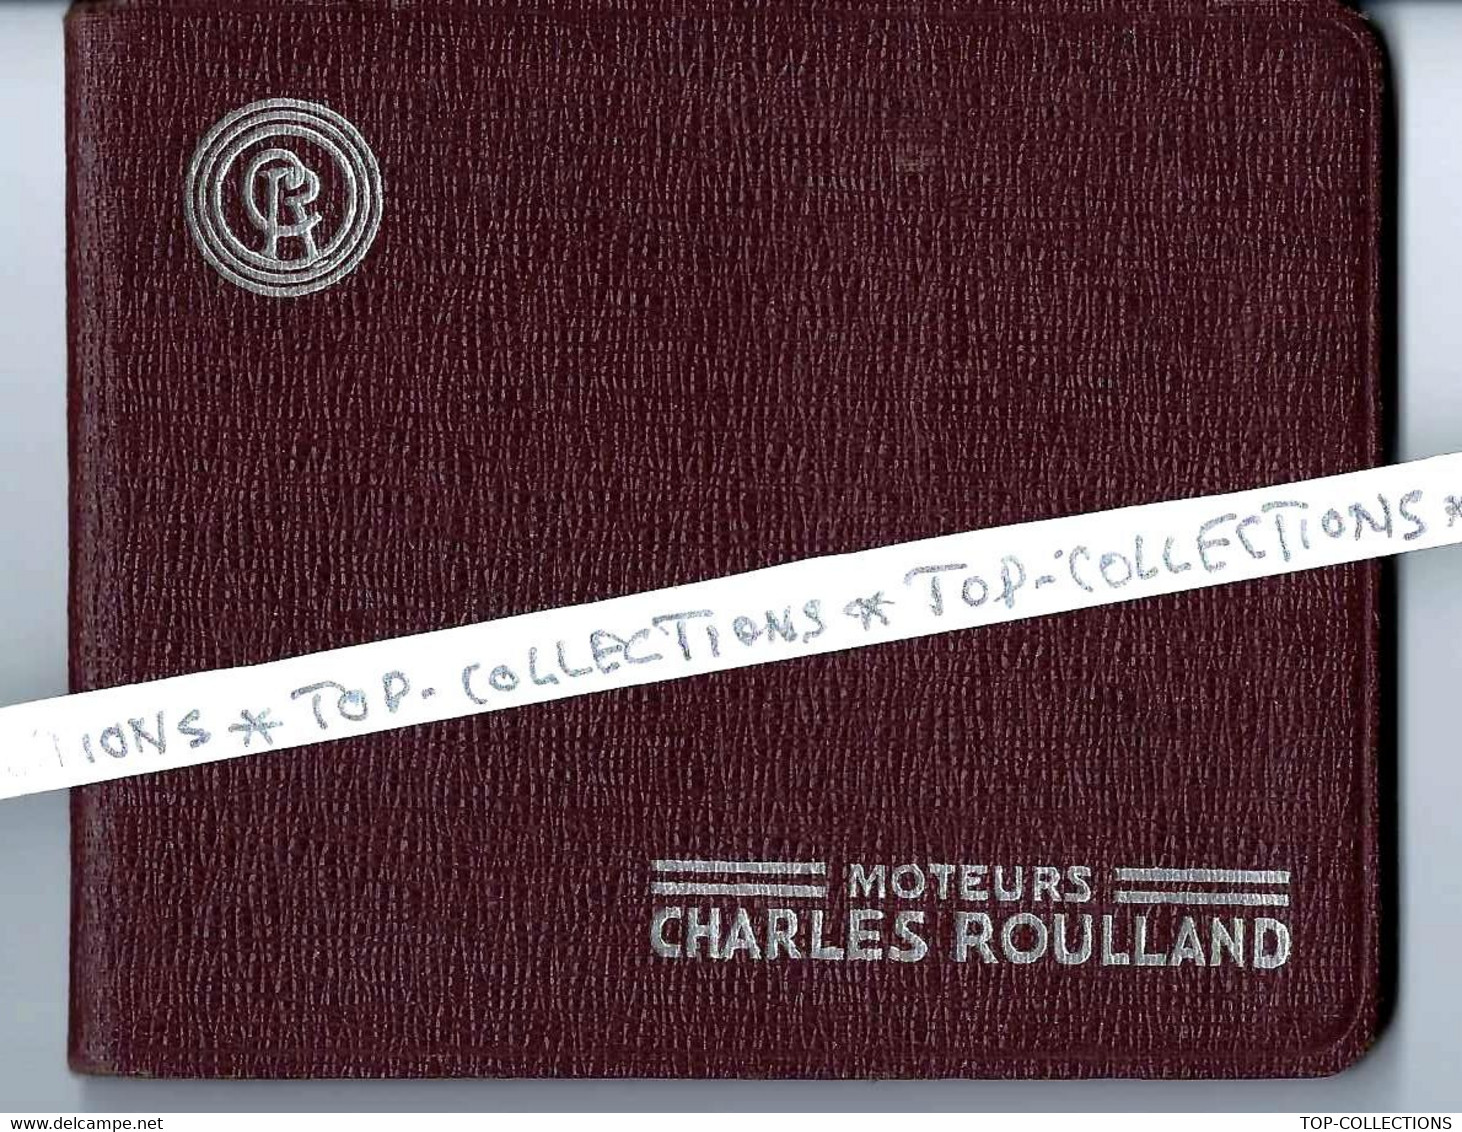 1940 CATALOGUE SUPERBE Moteurs Charles Roulland  Vincennes Région Parisienne 72 Pages B.E. - 1900 – 1949